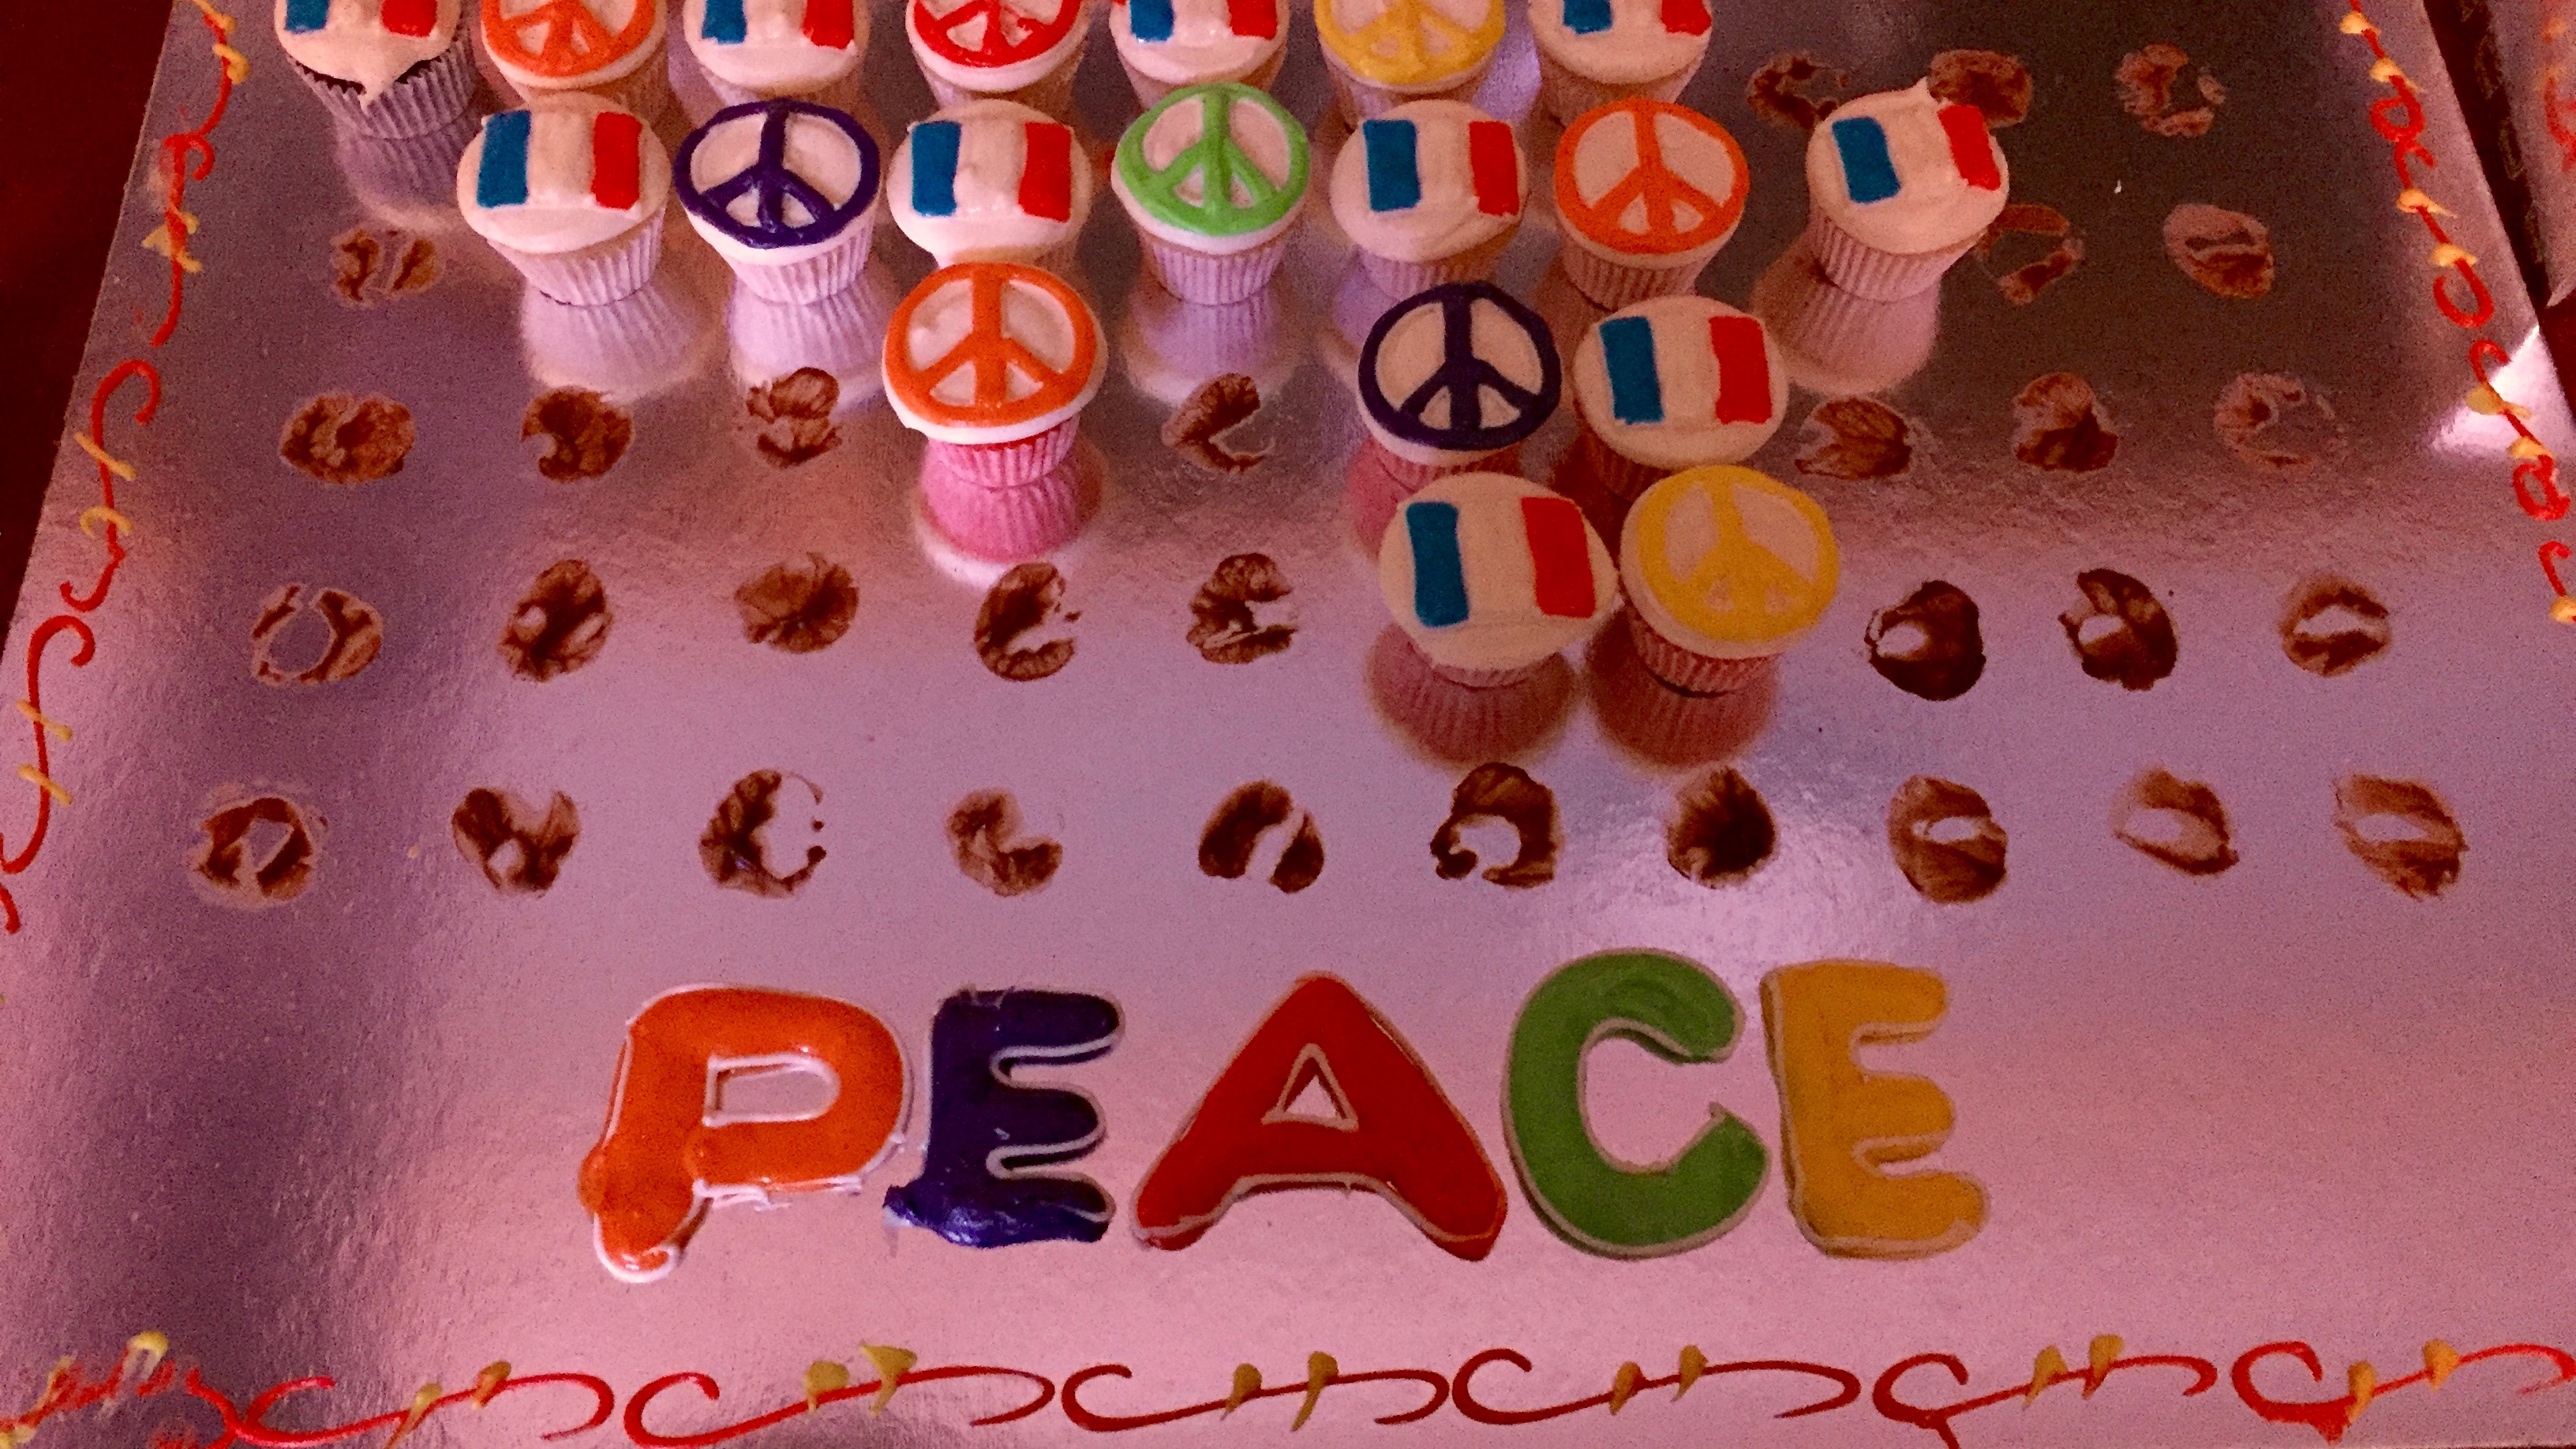 "Peace Cupcakes" délicieux réalisés par les étudiants francisants de l'université américaine du Koweït. Photo (c) Bulent Inan.